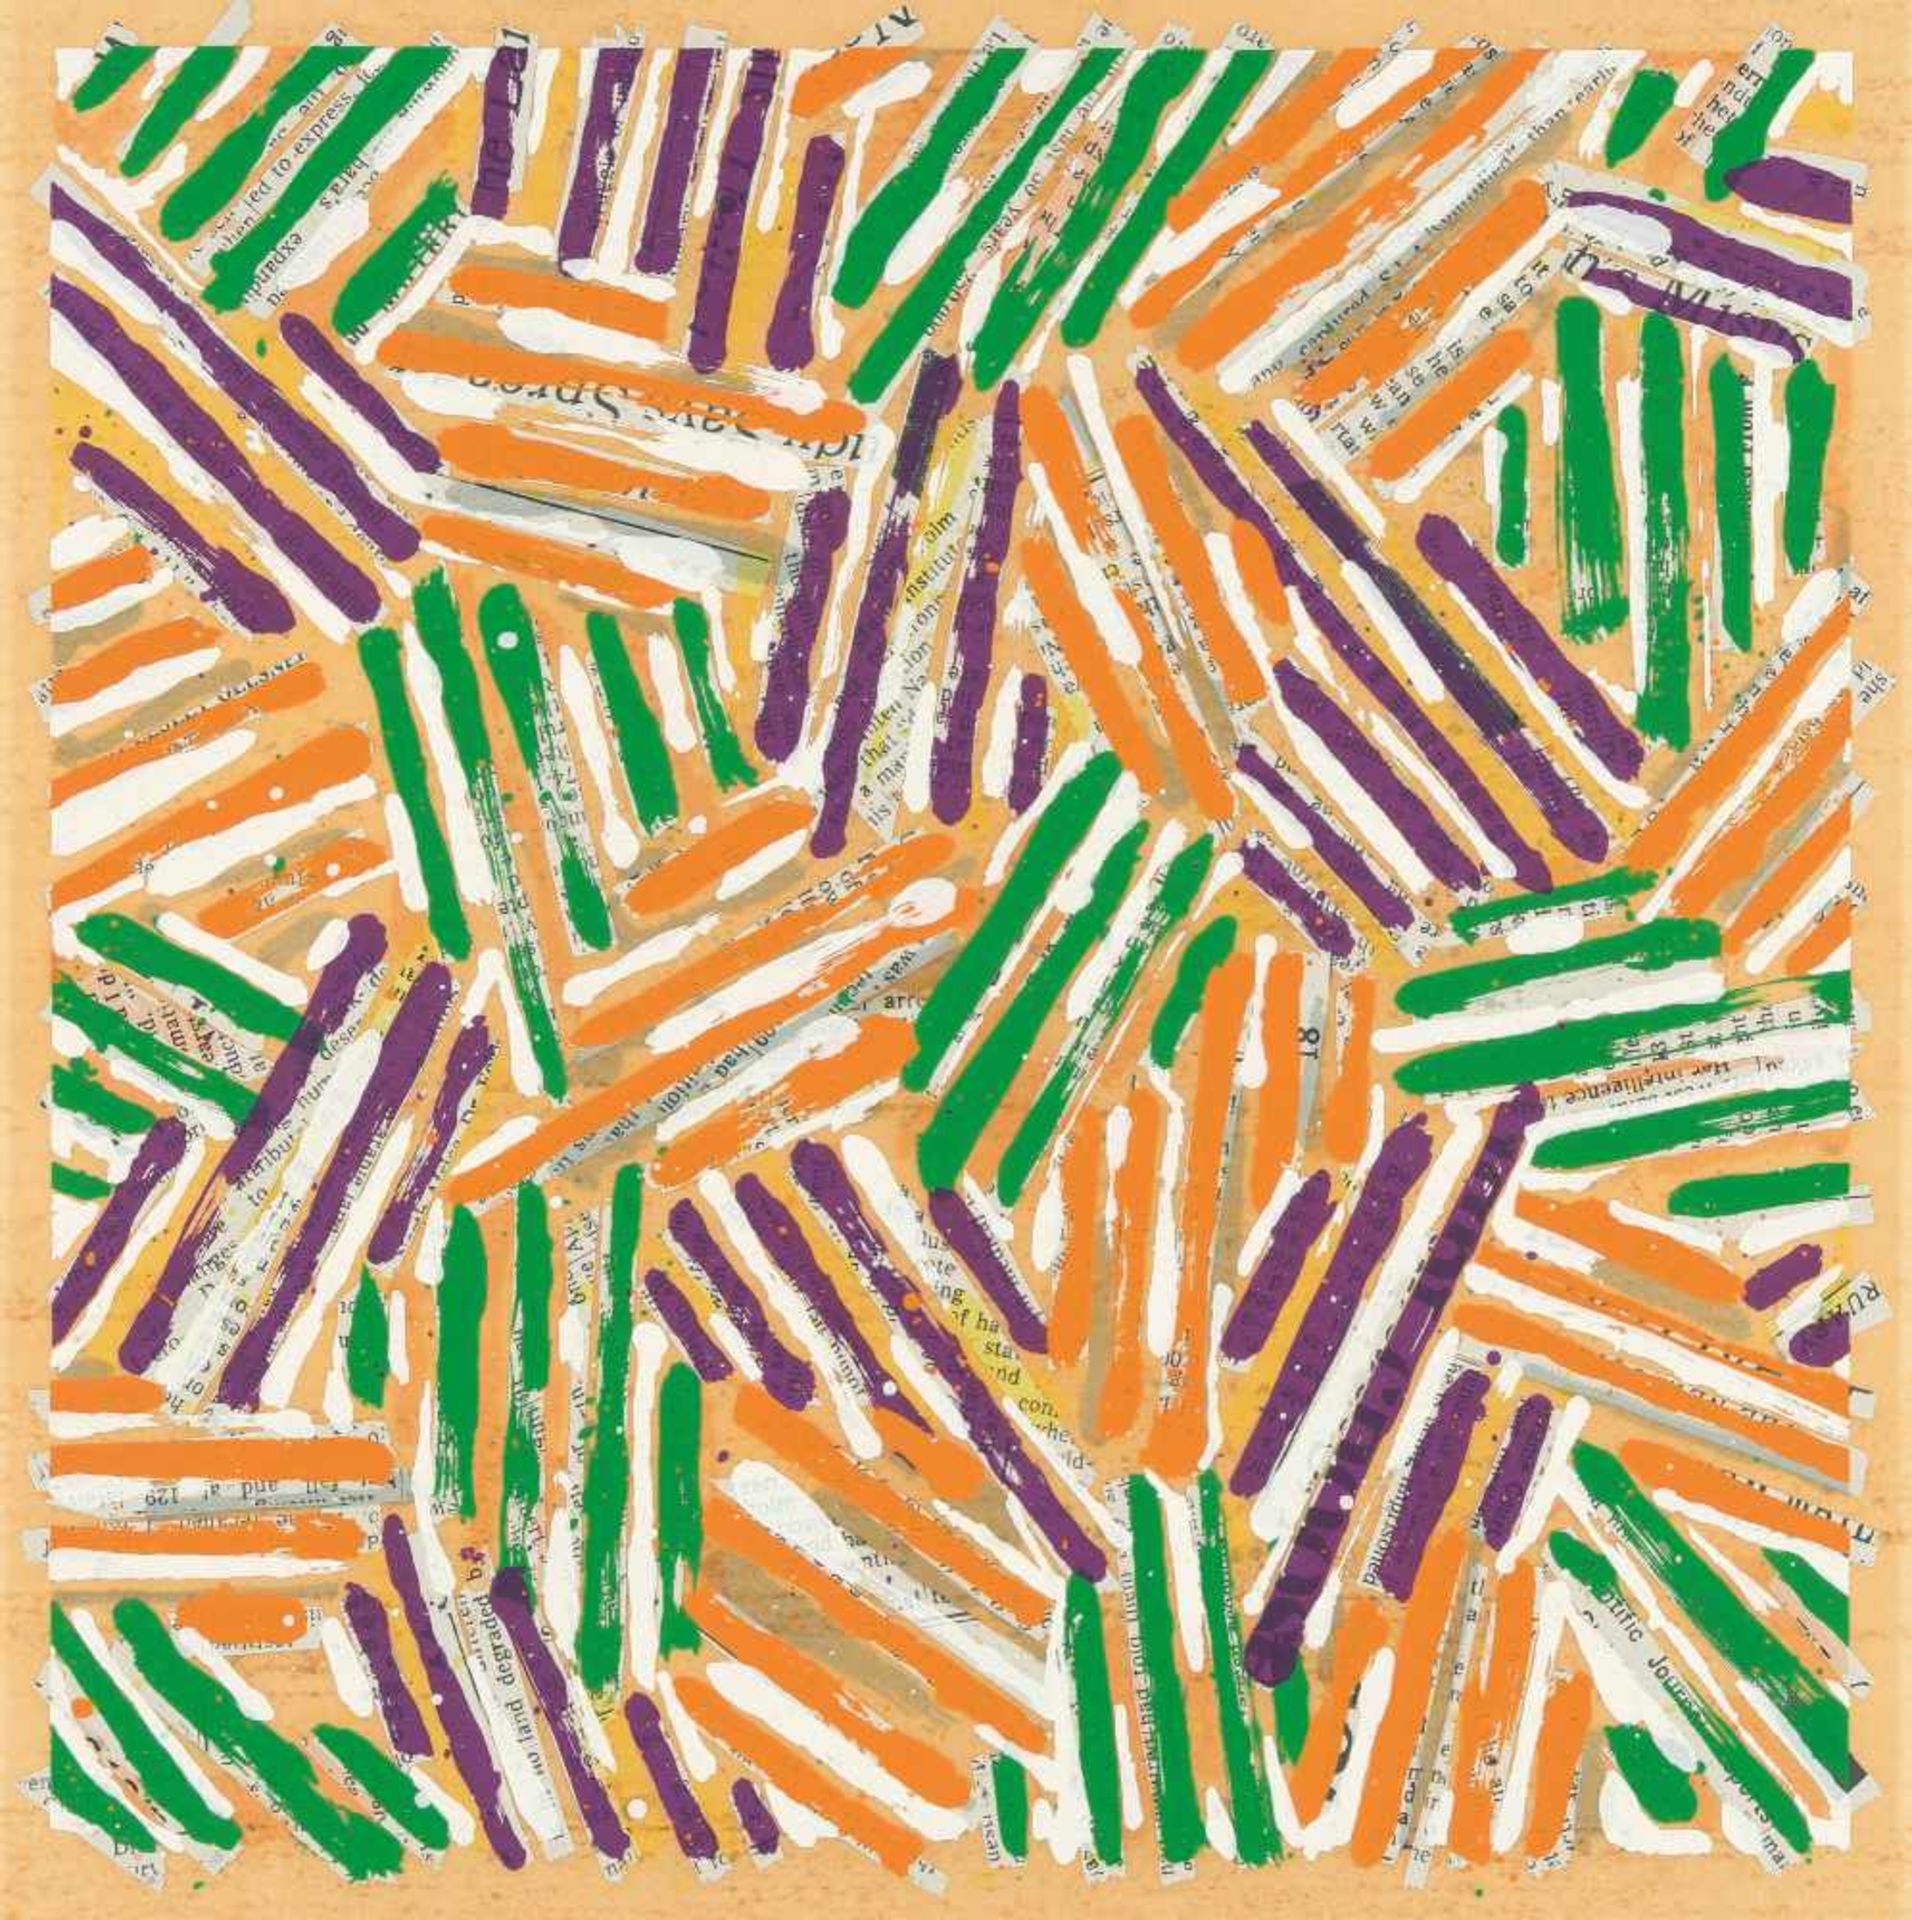 Jasper Johns1930 AugustaOhne Titel (Brooke Alexander Gallery New York)Farbige Serigraphie auf